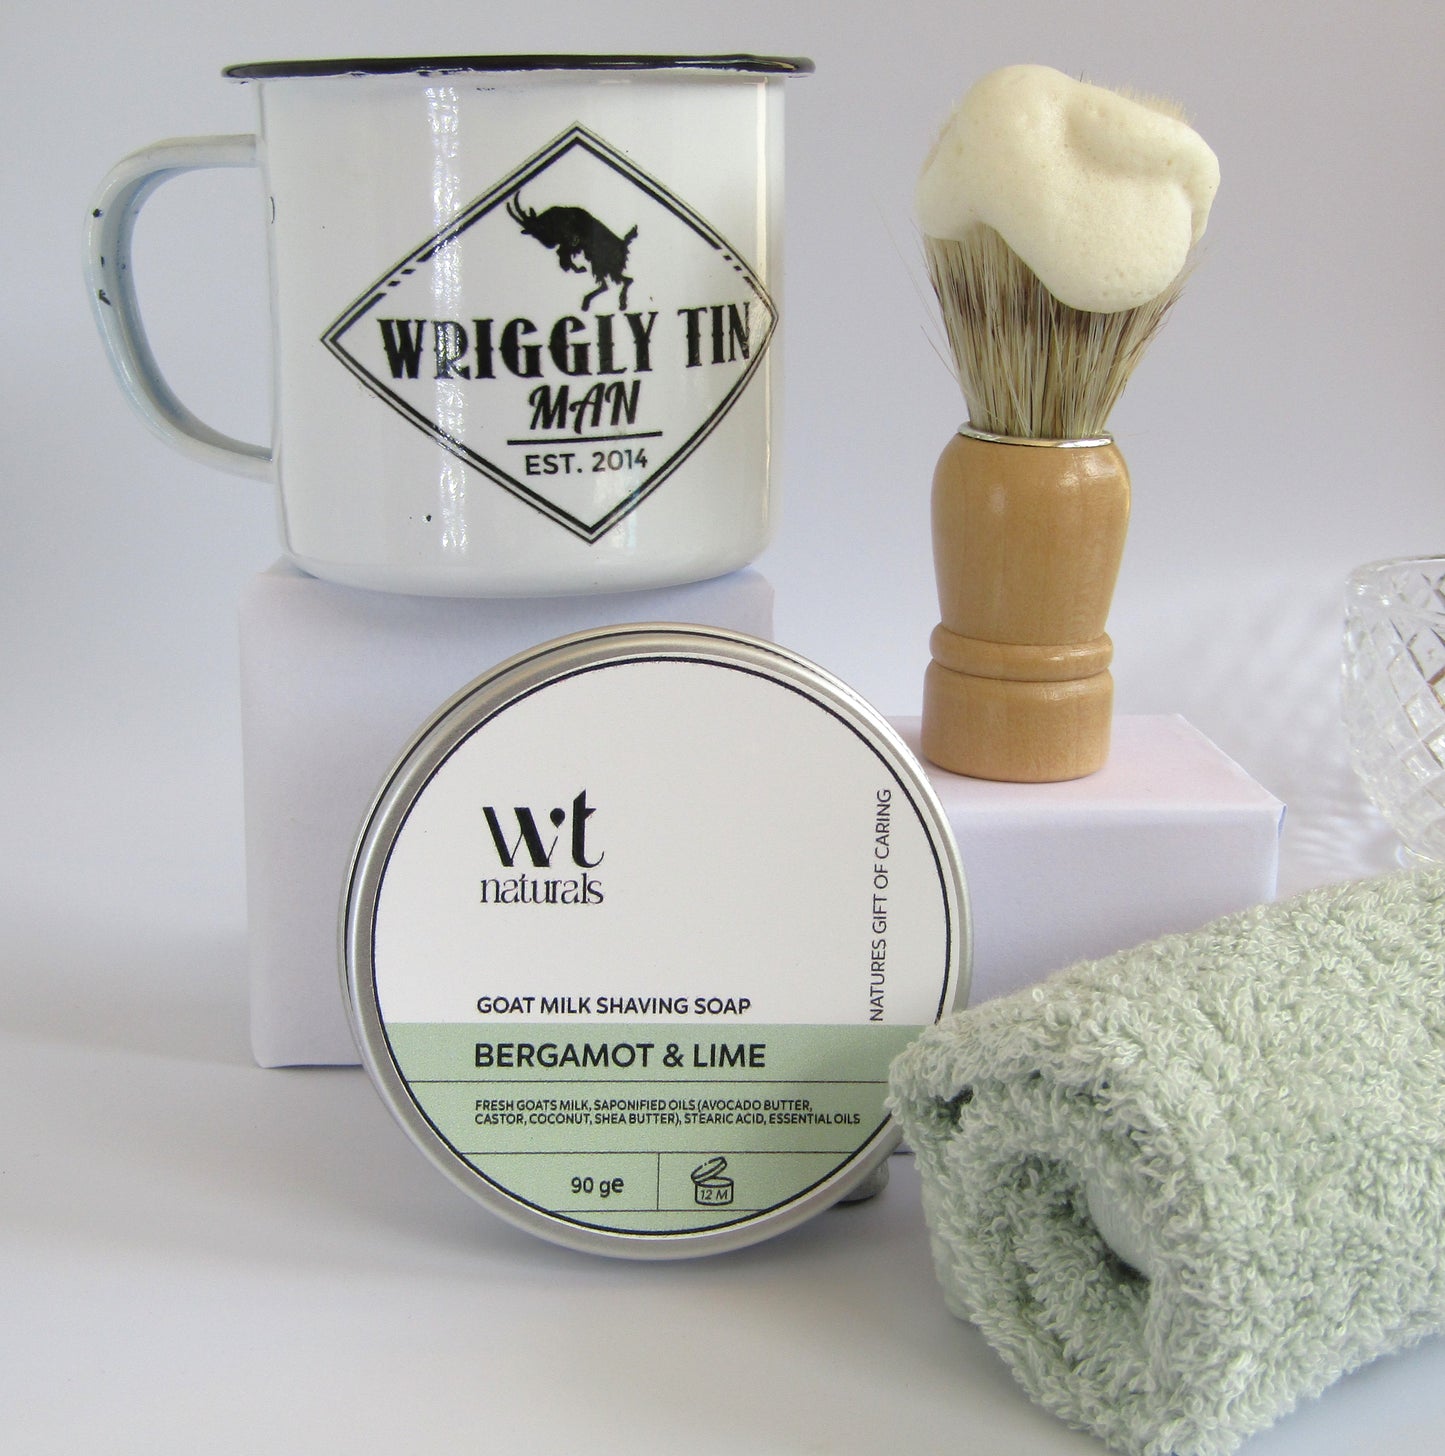 GOAT MILK SHAVING SET - Shaving Soap, Brush and Enamel Shaving Mug in Gift Box